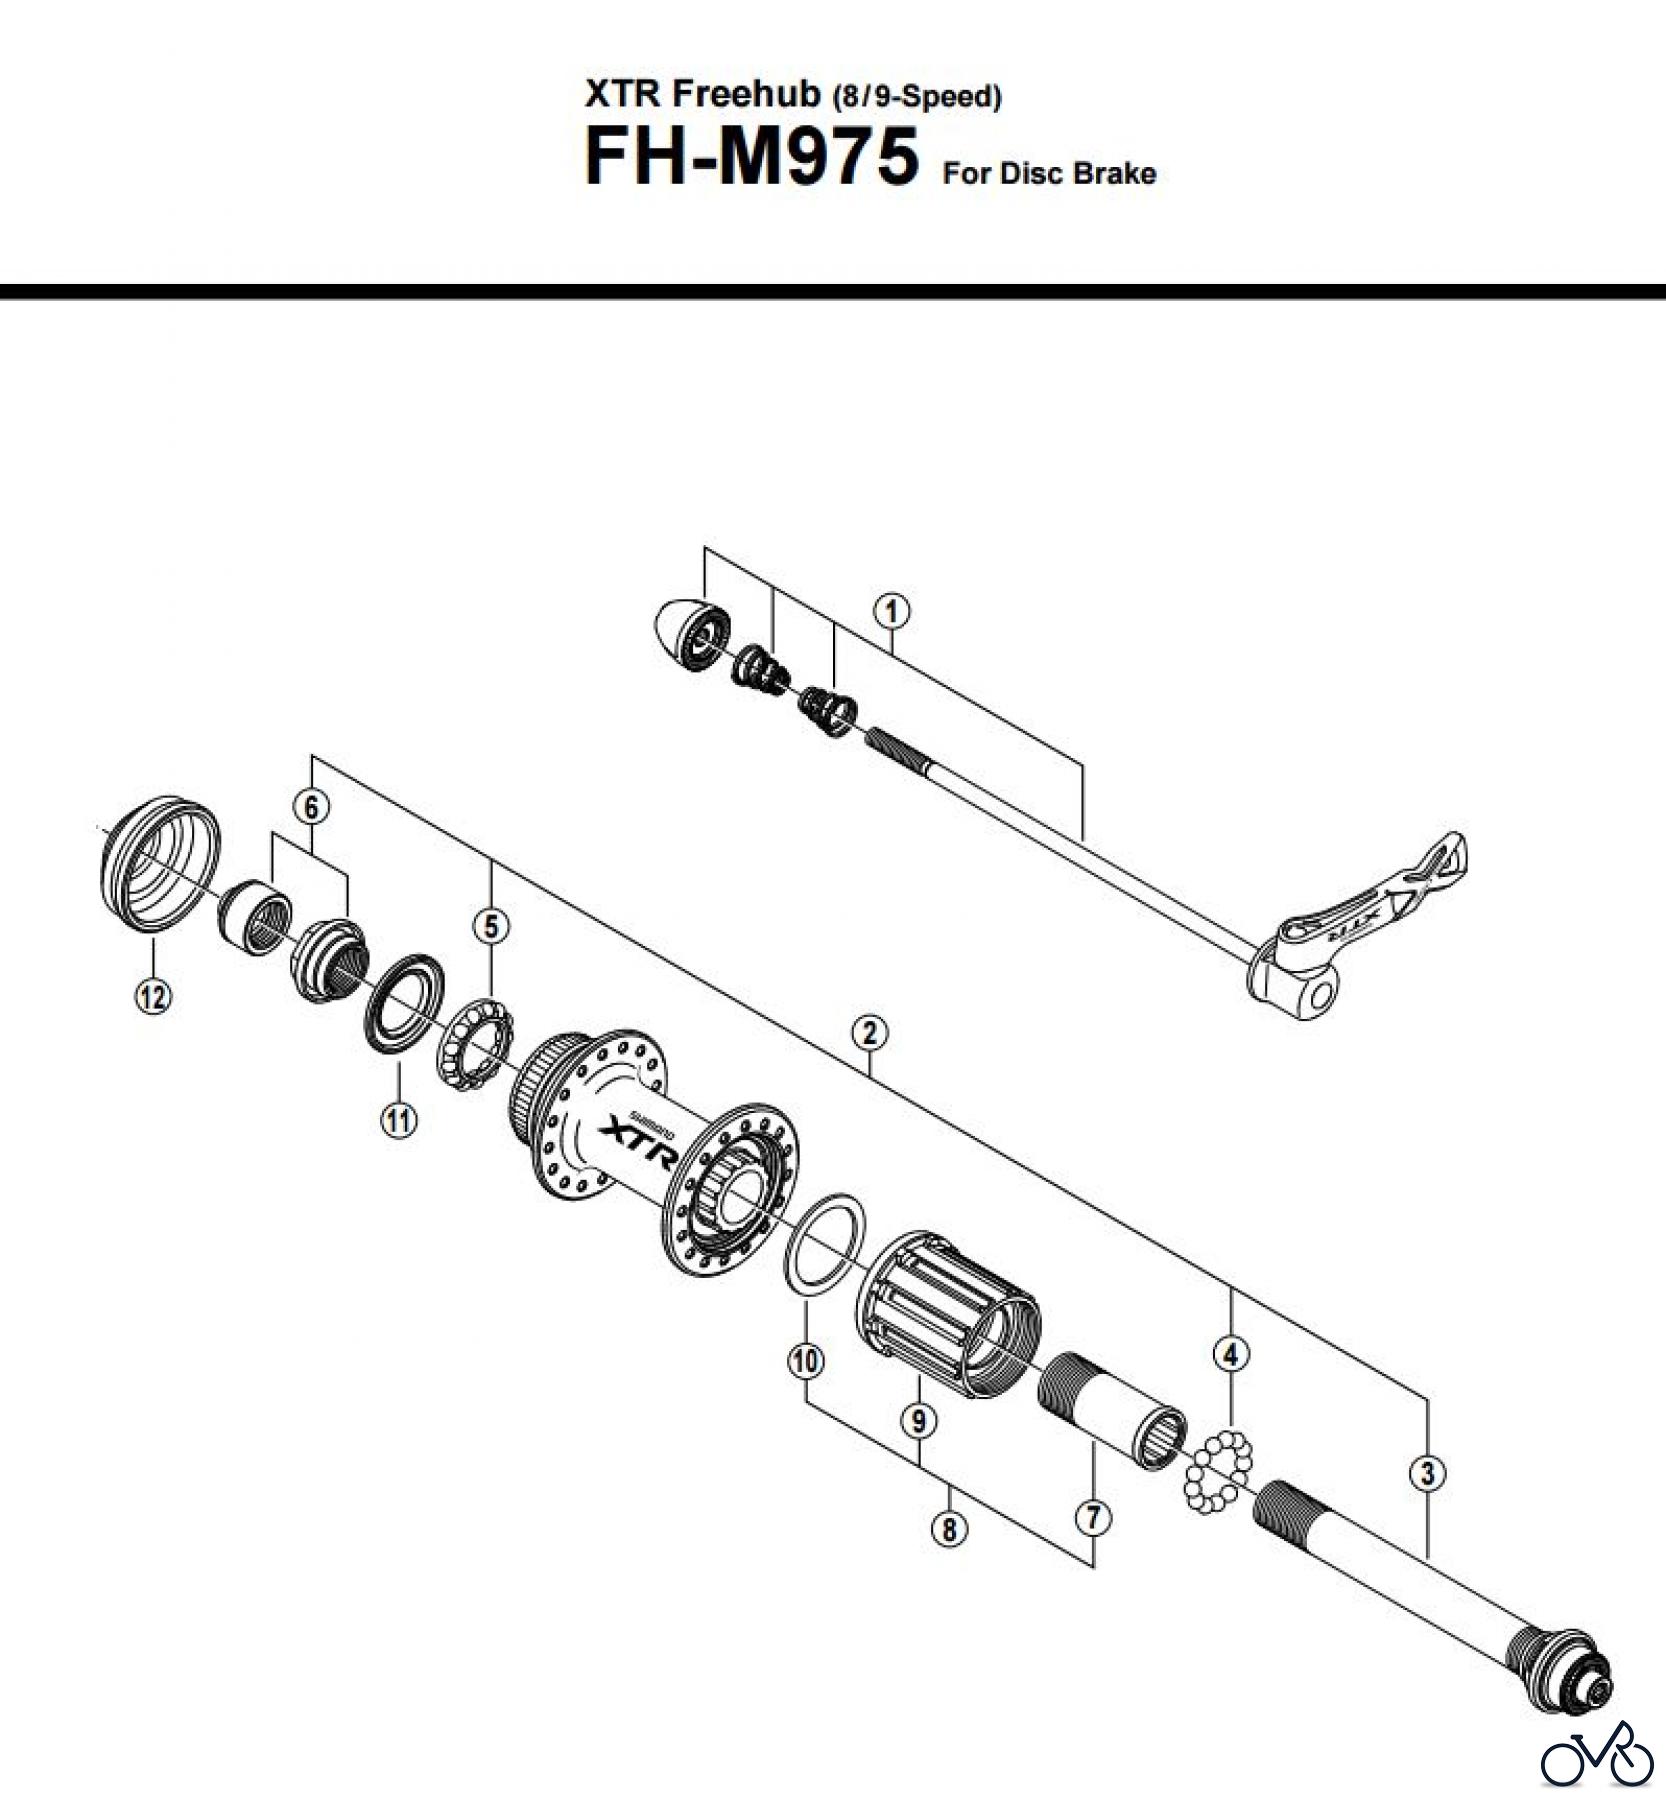  Shimano FH Free Hub - Freilaufnabe FH-M975 -2547A XTR Freehub (8/9-Speed)